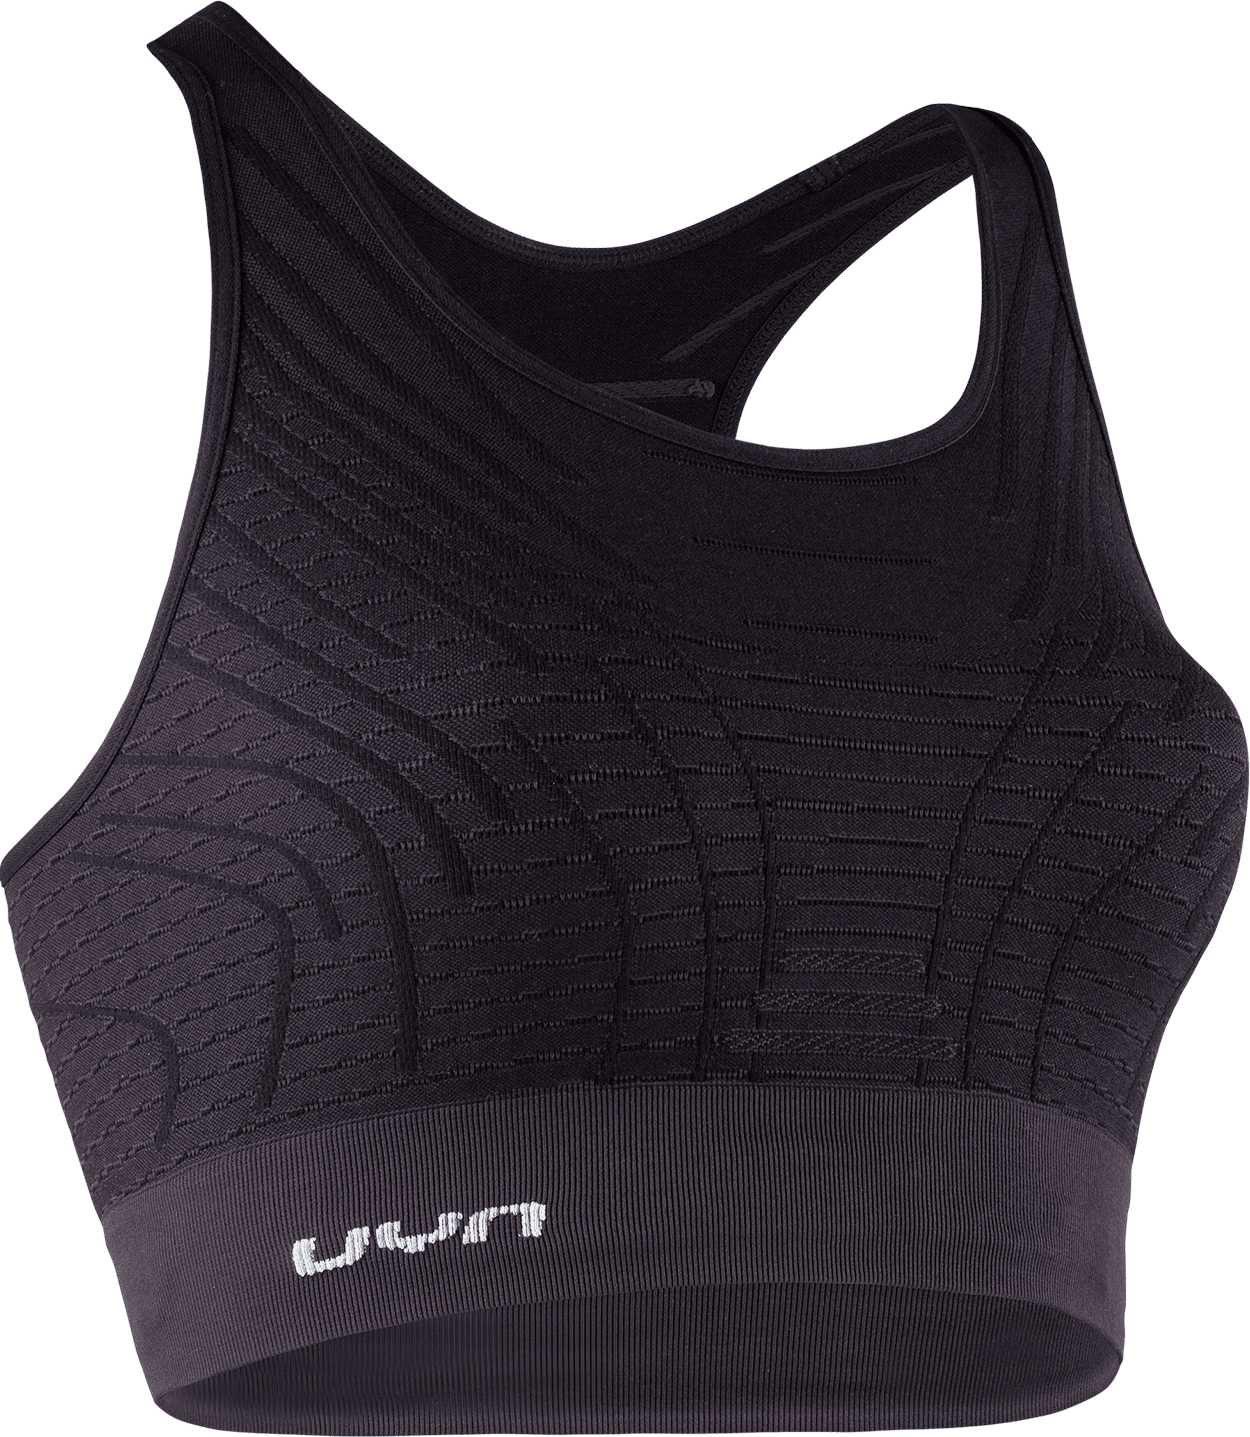 Uyn Motyon 2.0 - Sports bra - Women's